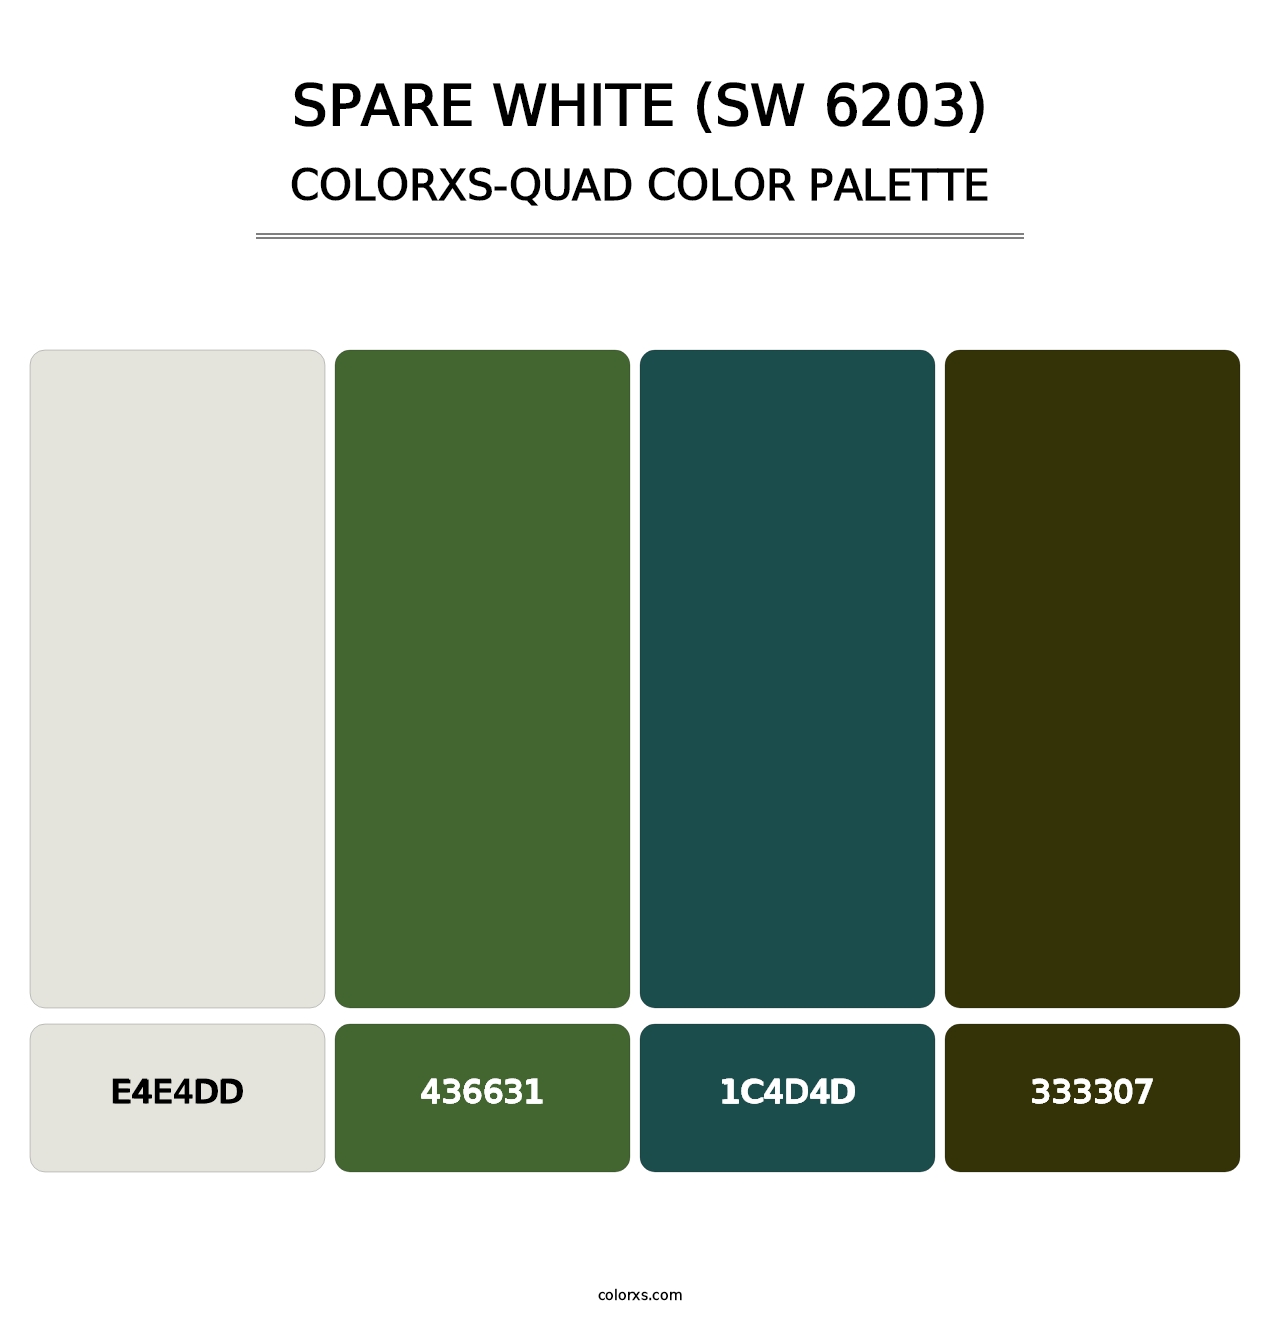 Spare White (SW 6203) - Colorxs Quad Palette